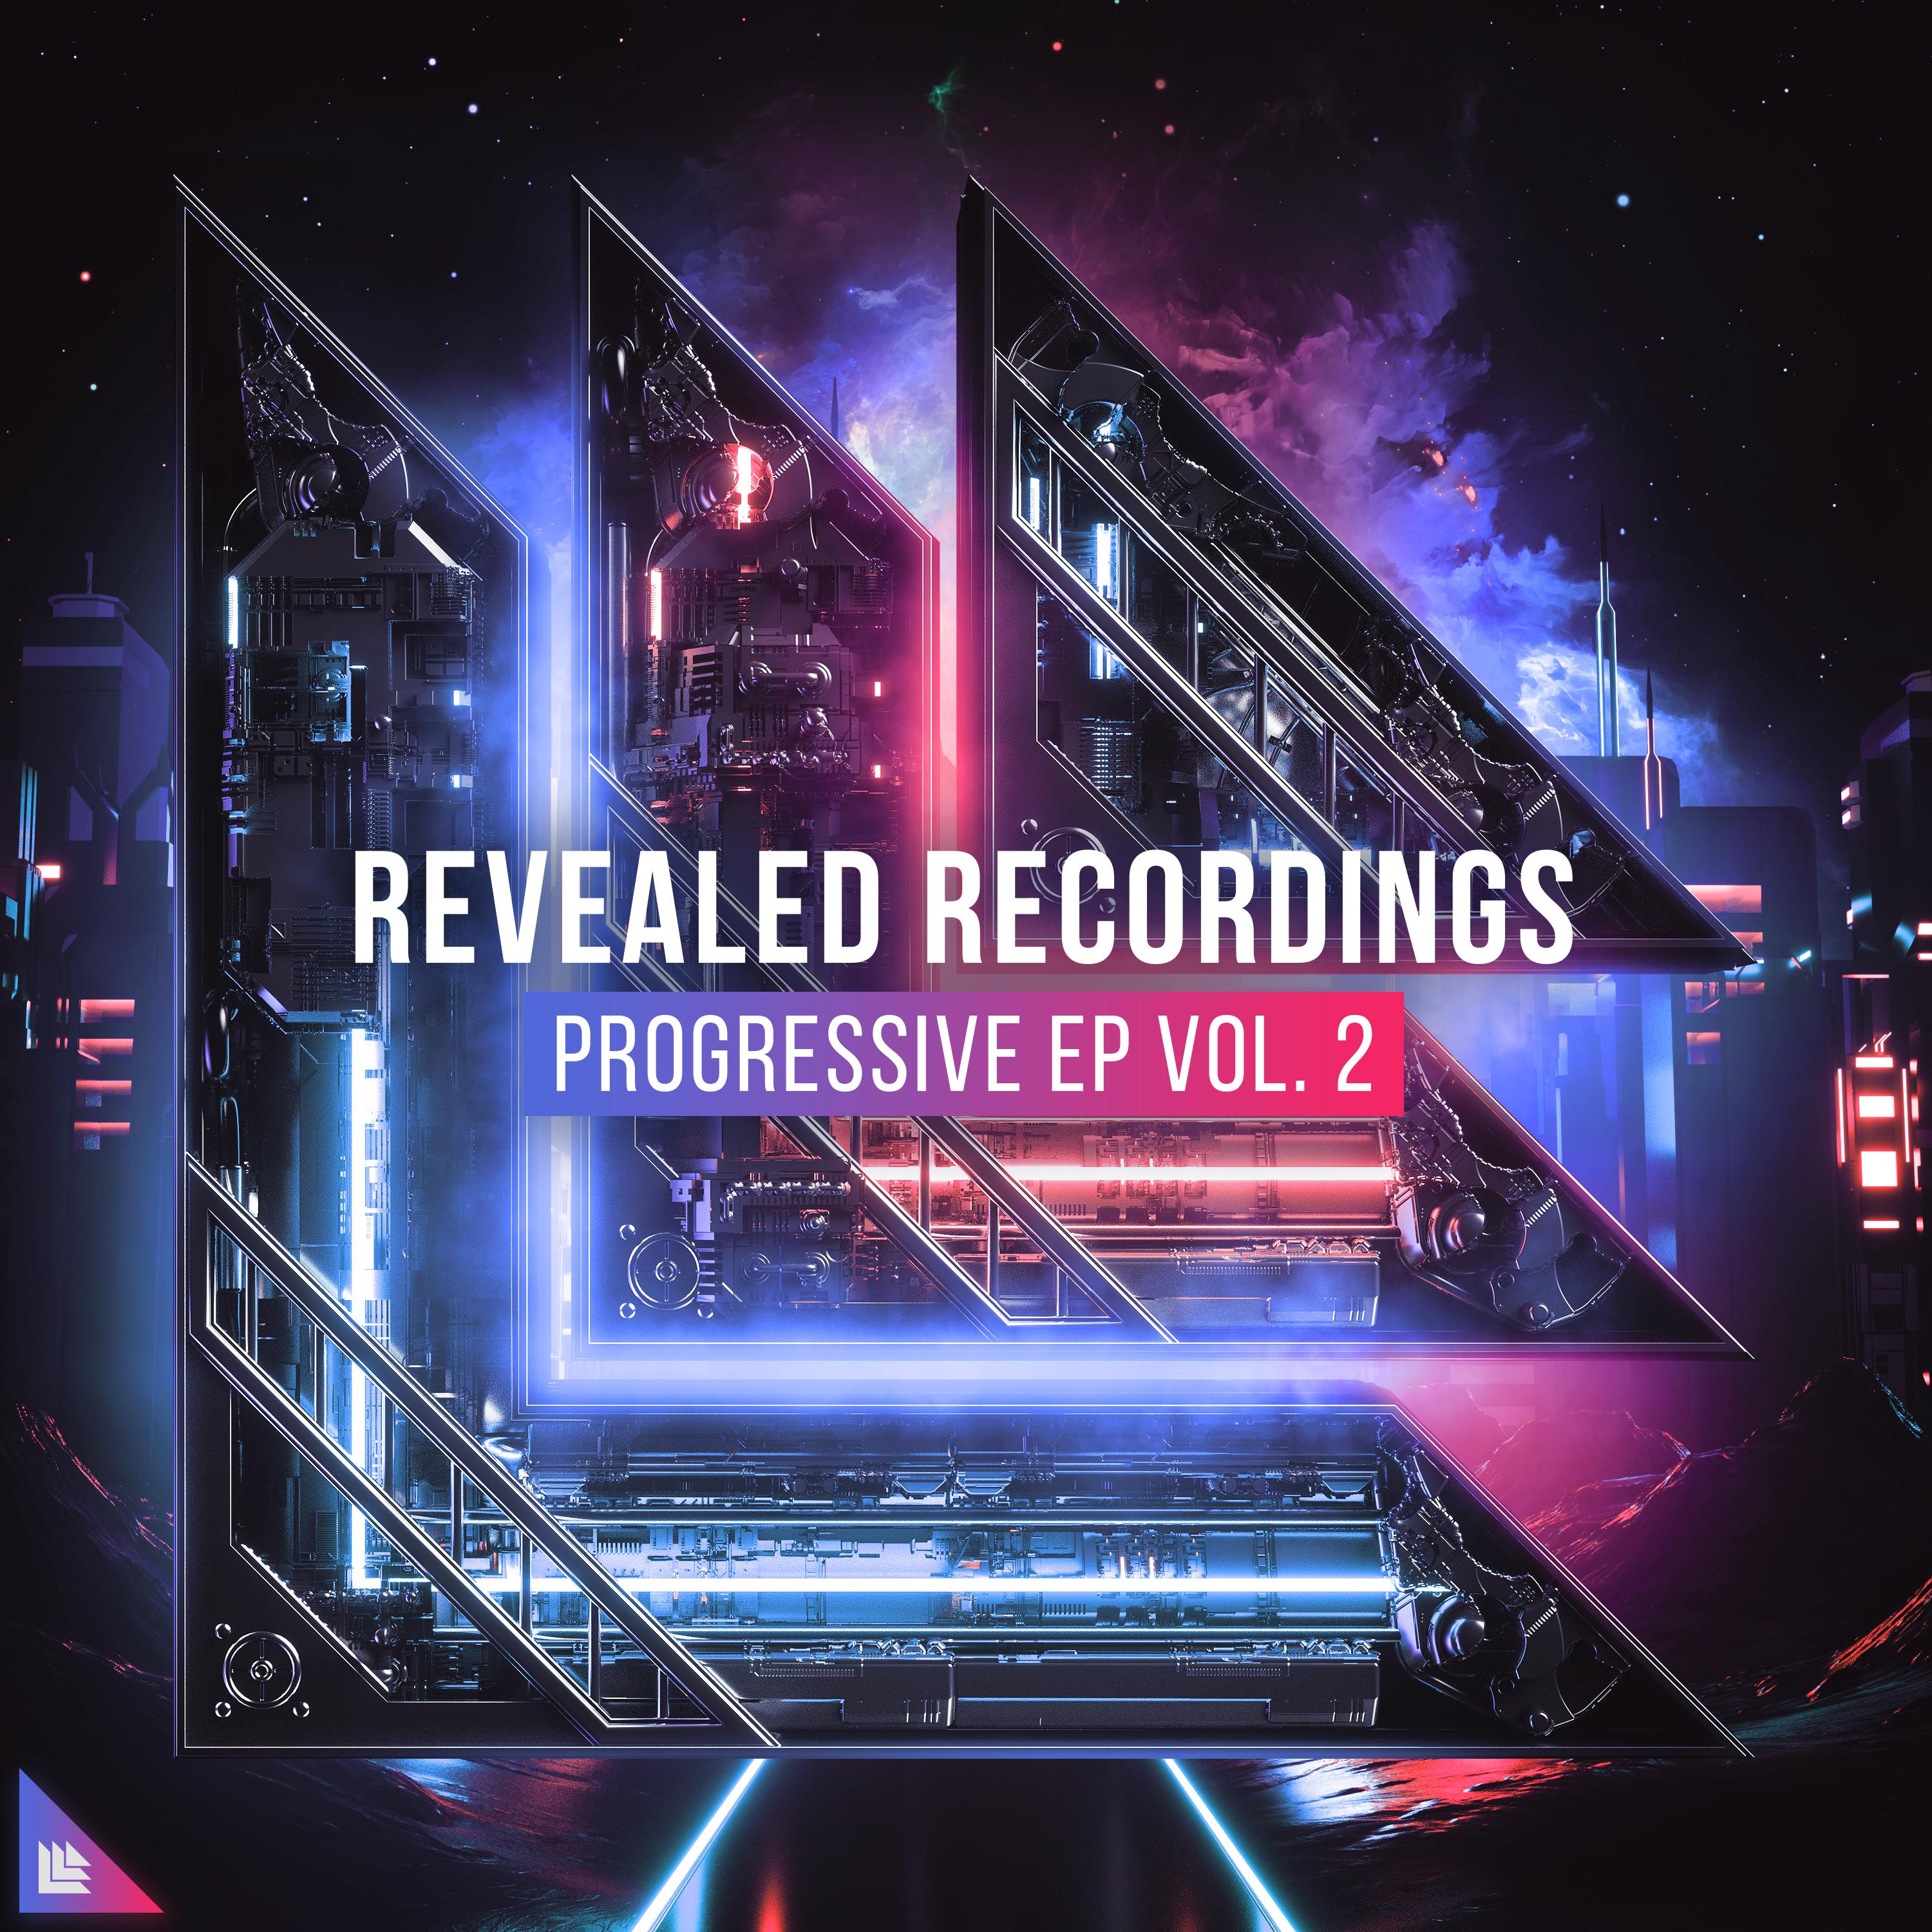 Revealed Recordings presents Progressive EP Vol. 2